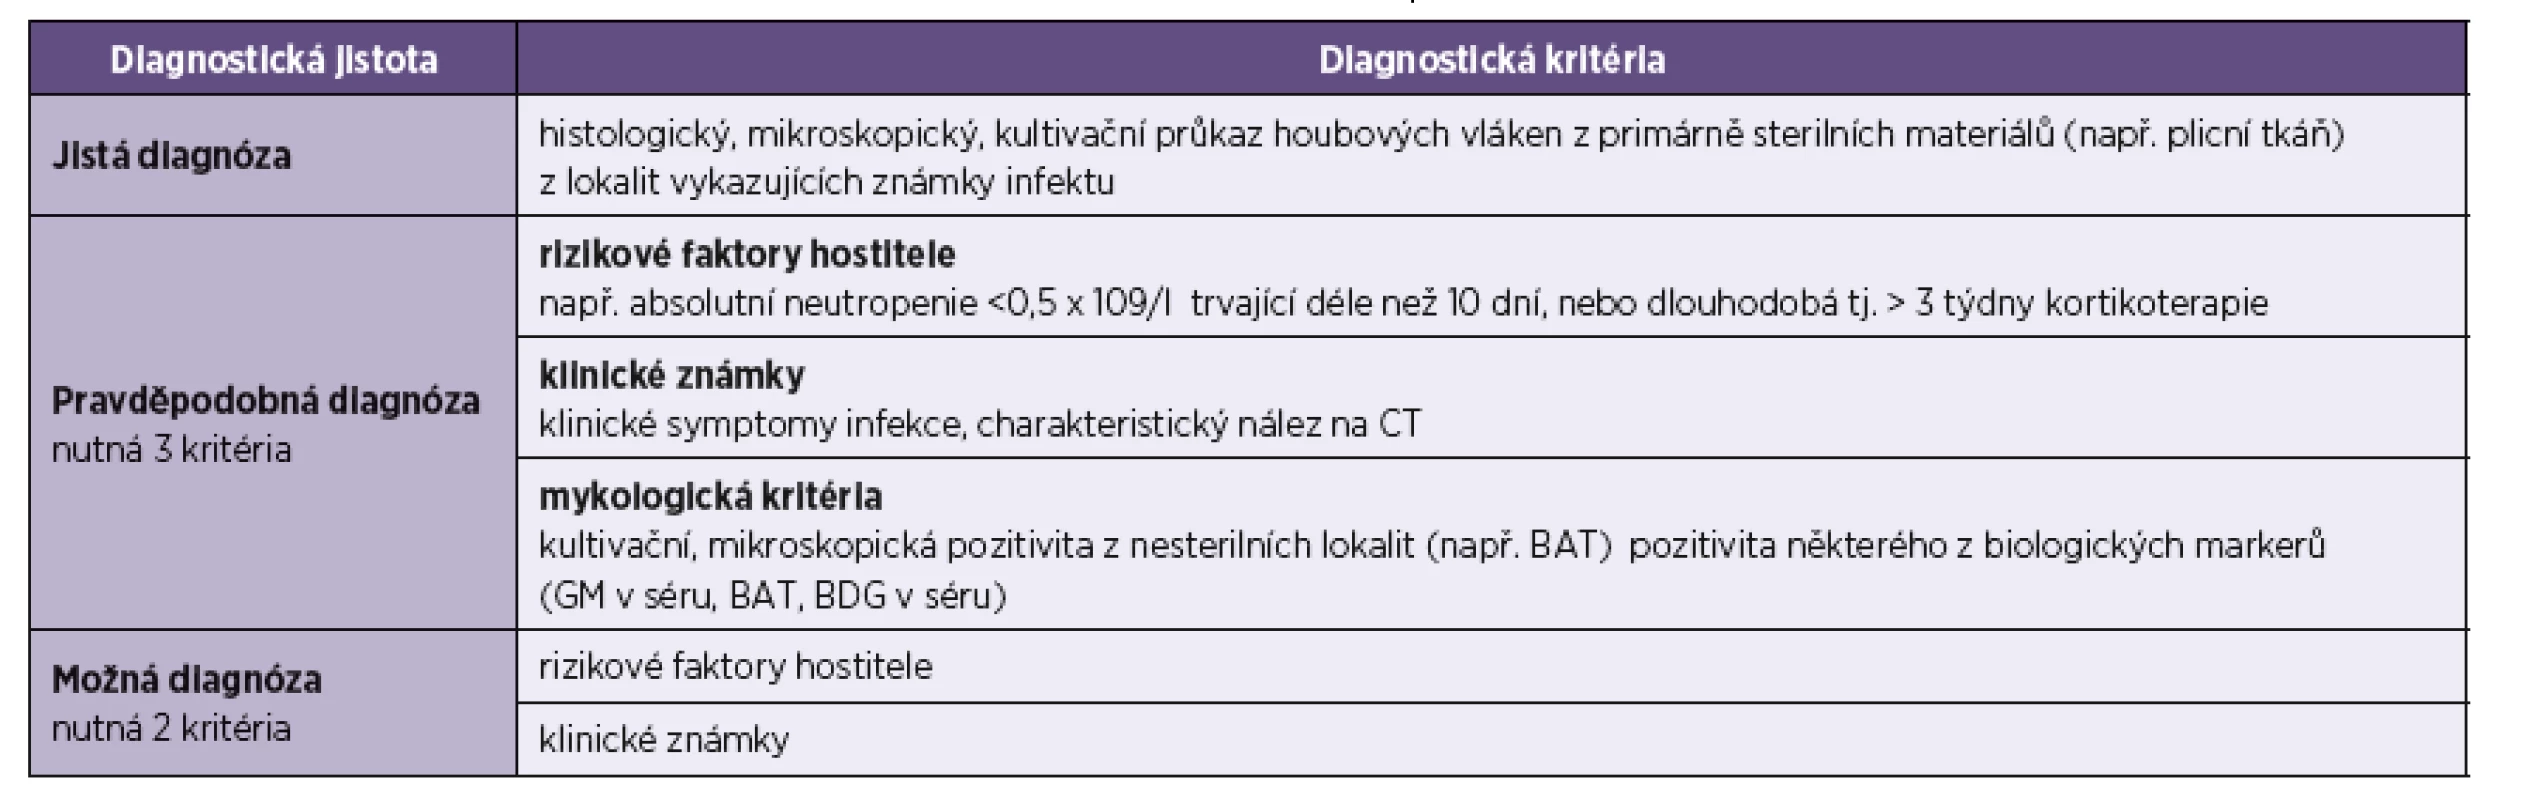 Diagnostická kritéria pro IFD vyvolaná vláknitými houbami (upraveno podle [6])
Table 1. Diagnostic criteria for IFD induced by fibrous fungi (adapted from [6])